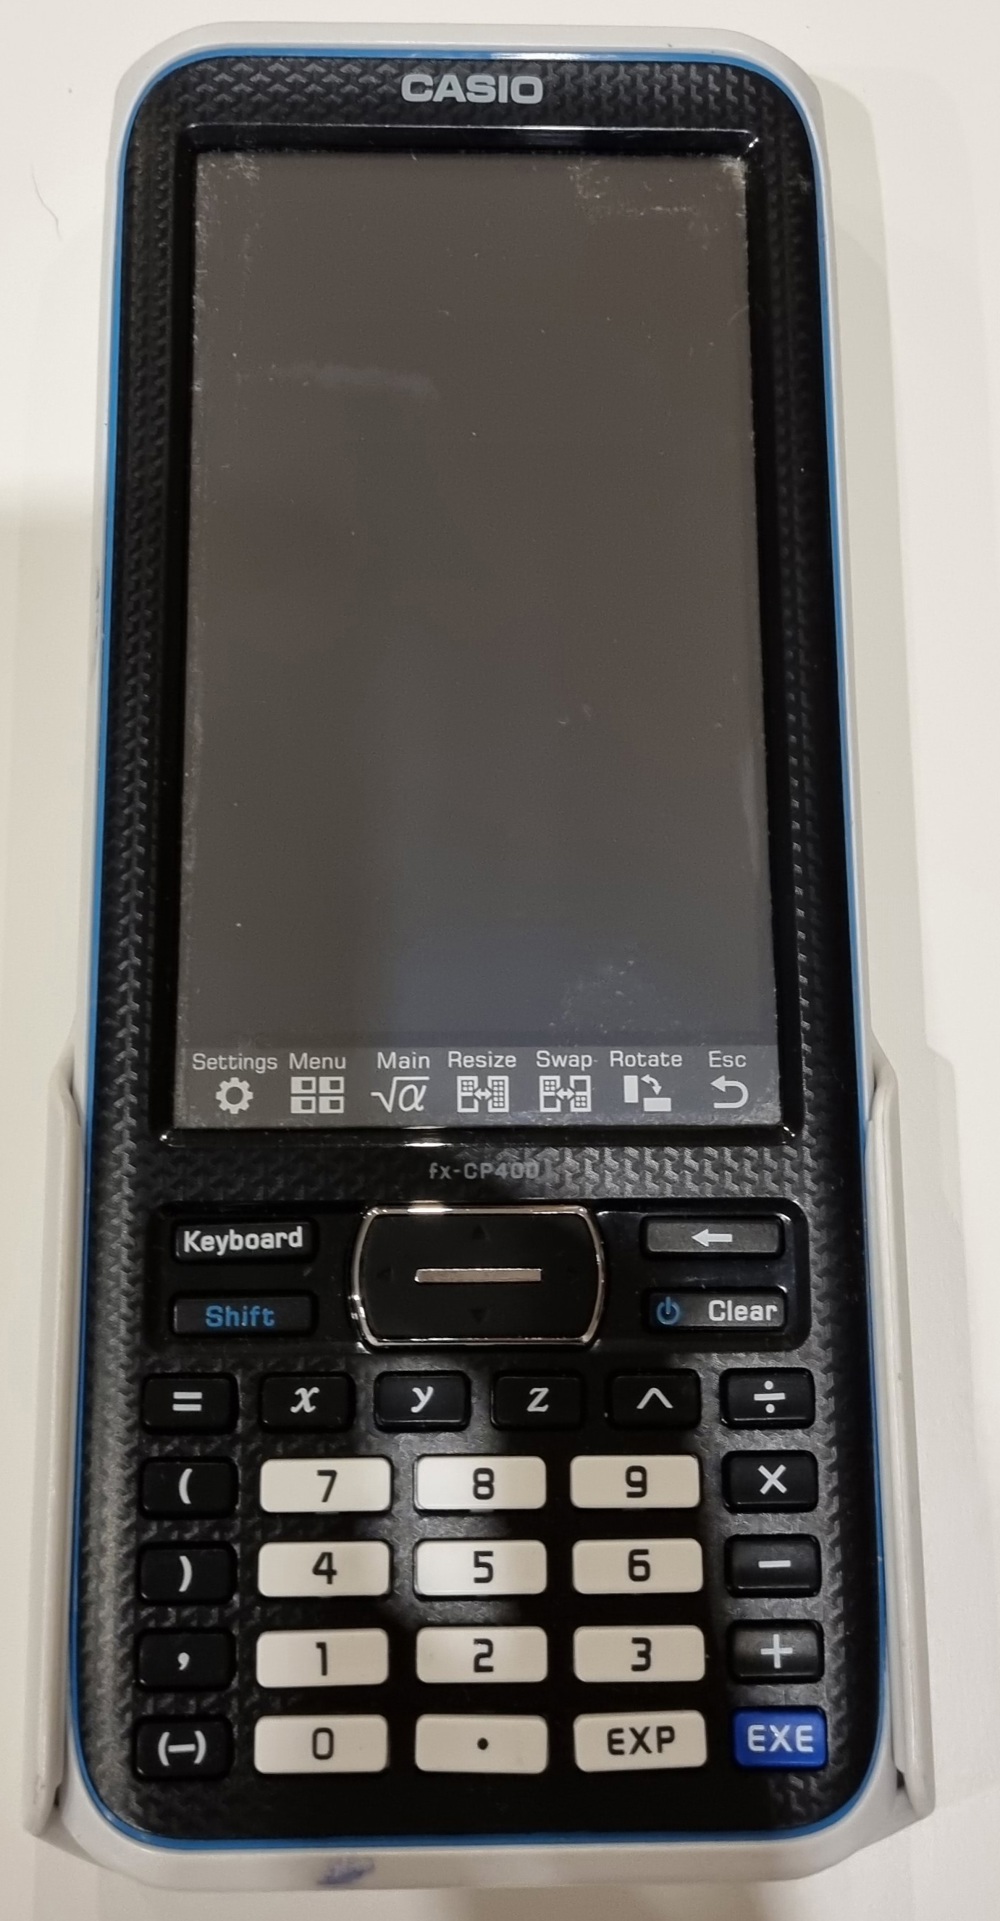 Casio fx-CP400